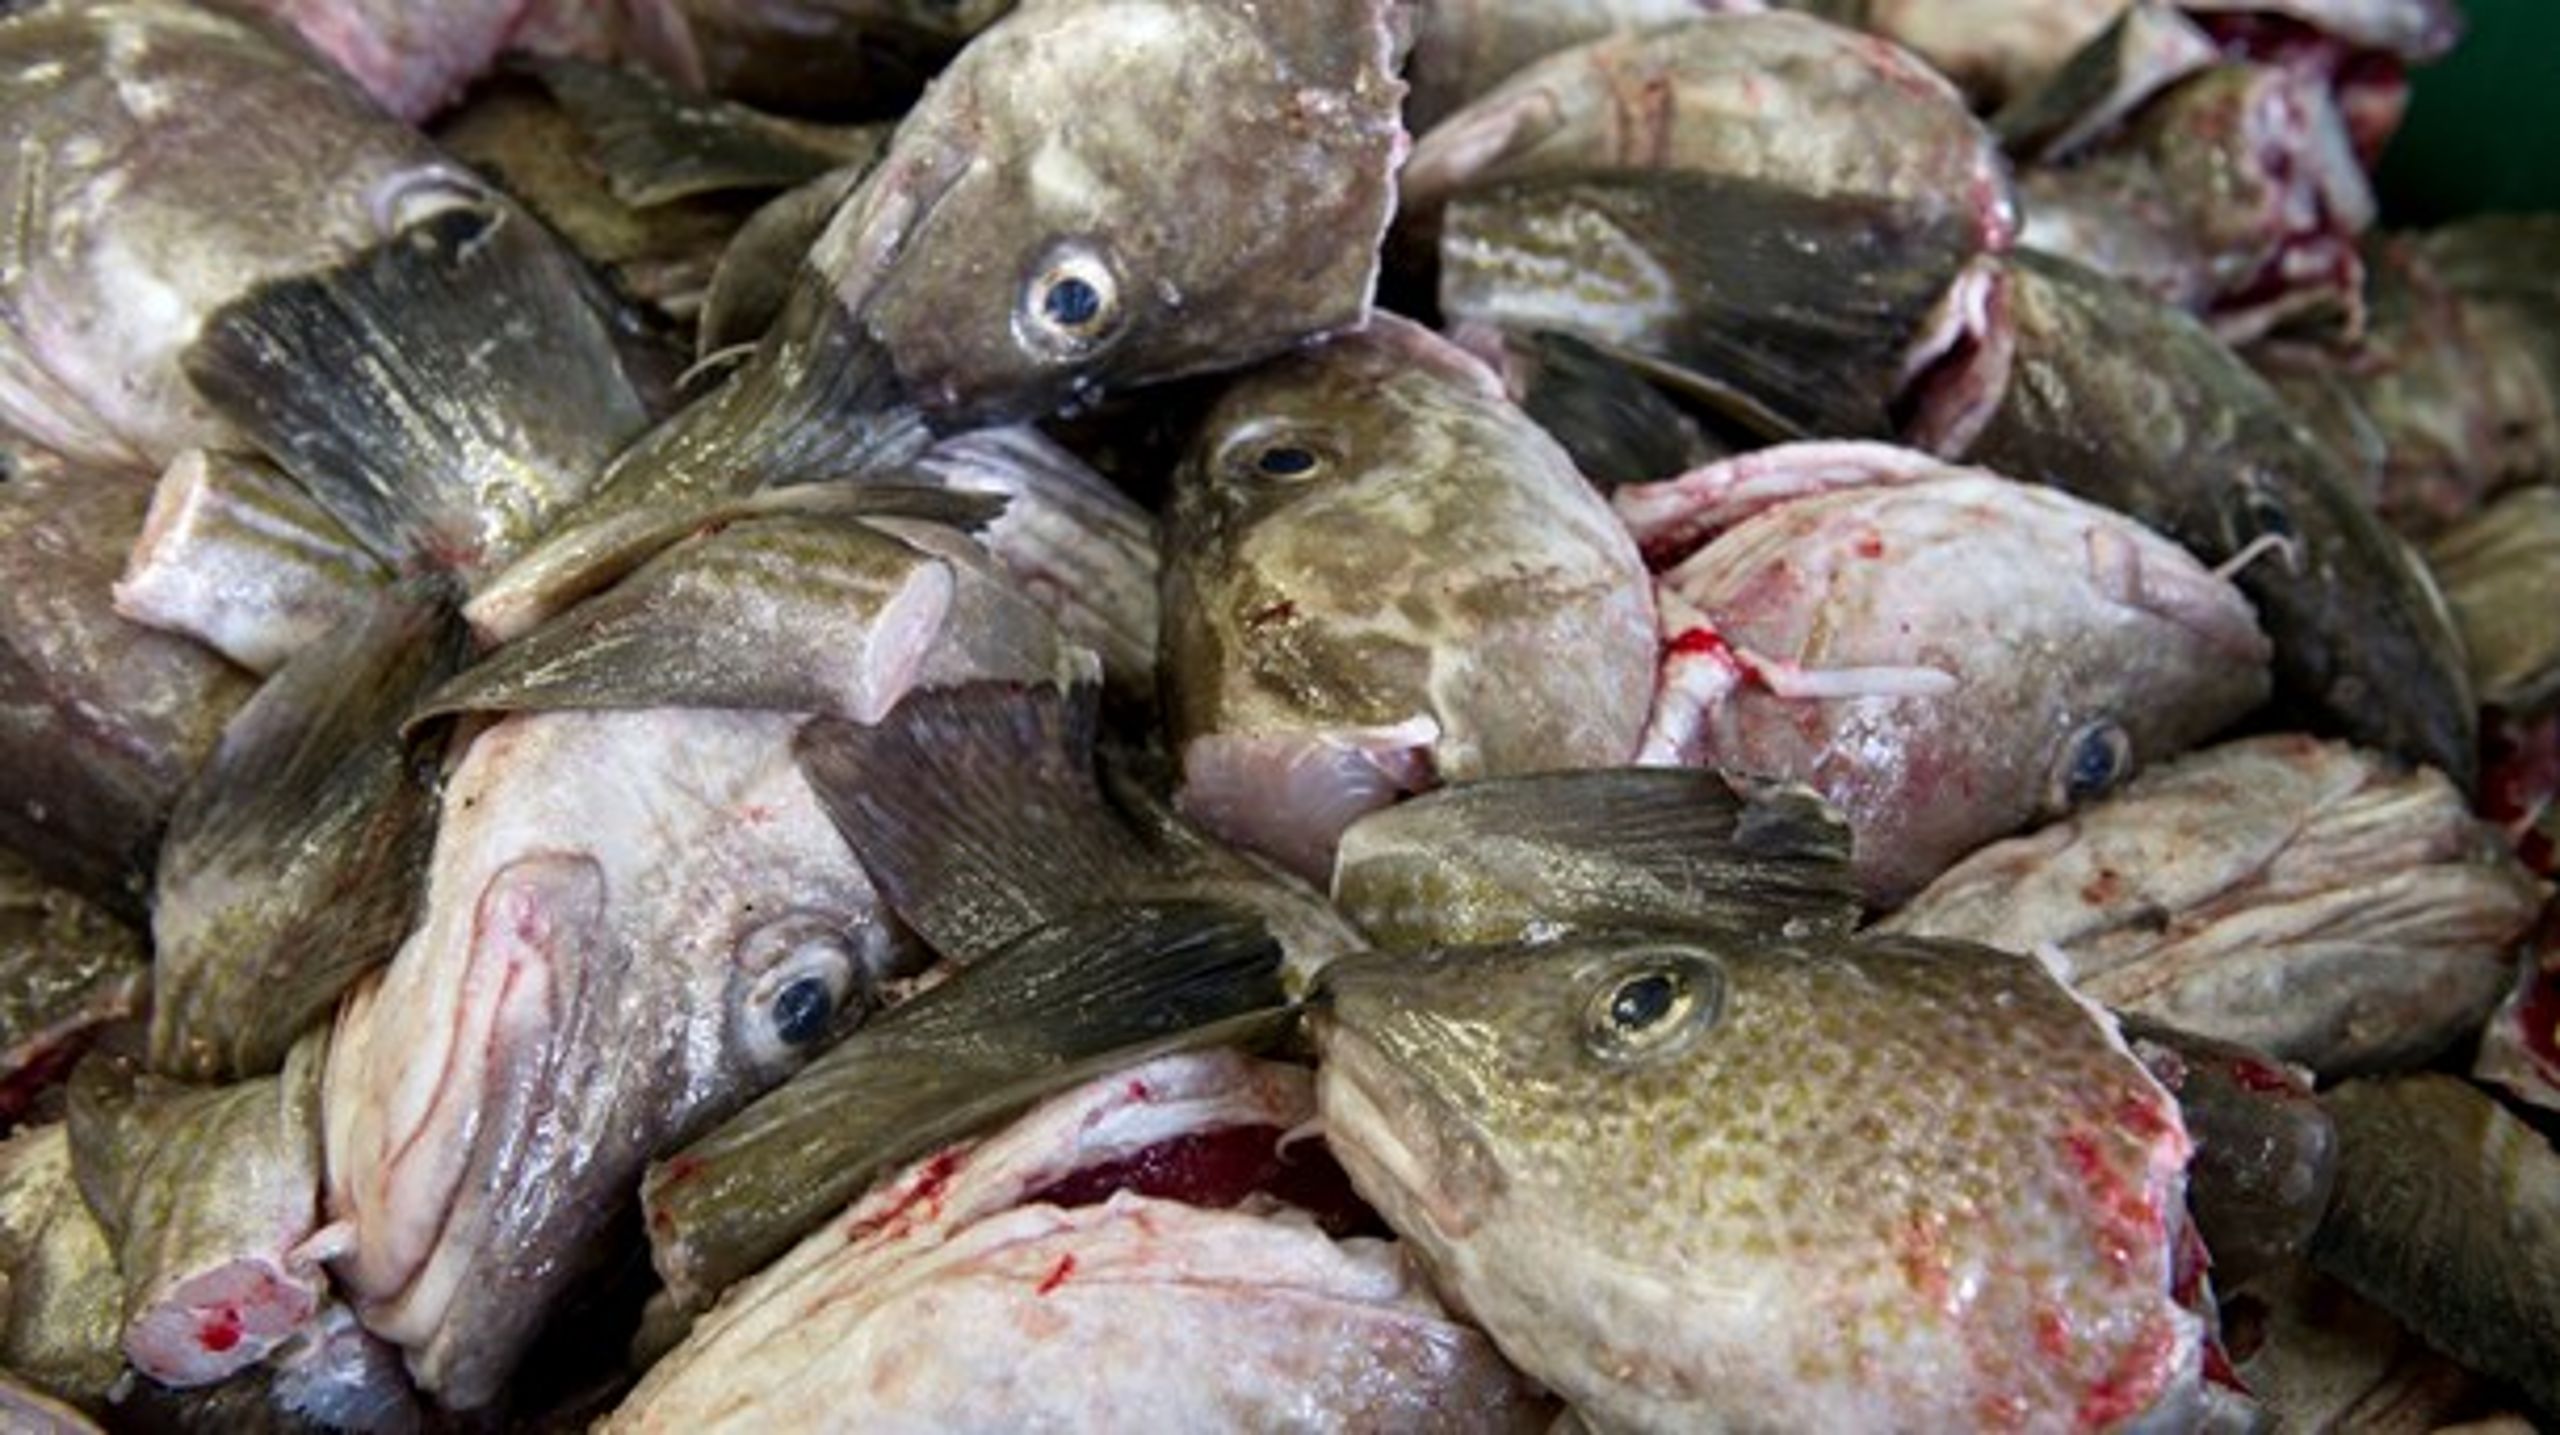 TORSKEDUMT: Fiskeriforeningen fjerner bevidst fokus fra de væsentlige problemer.